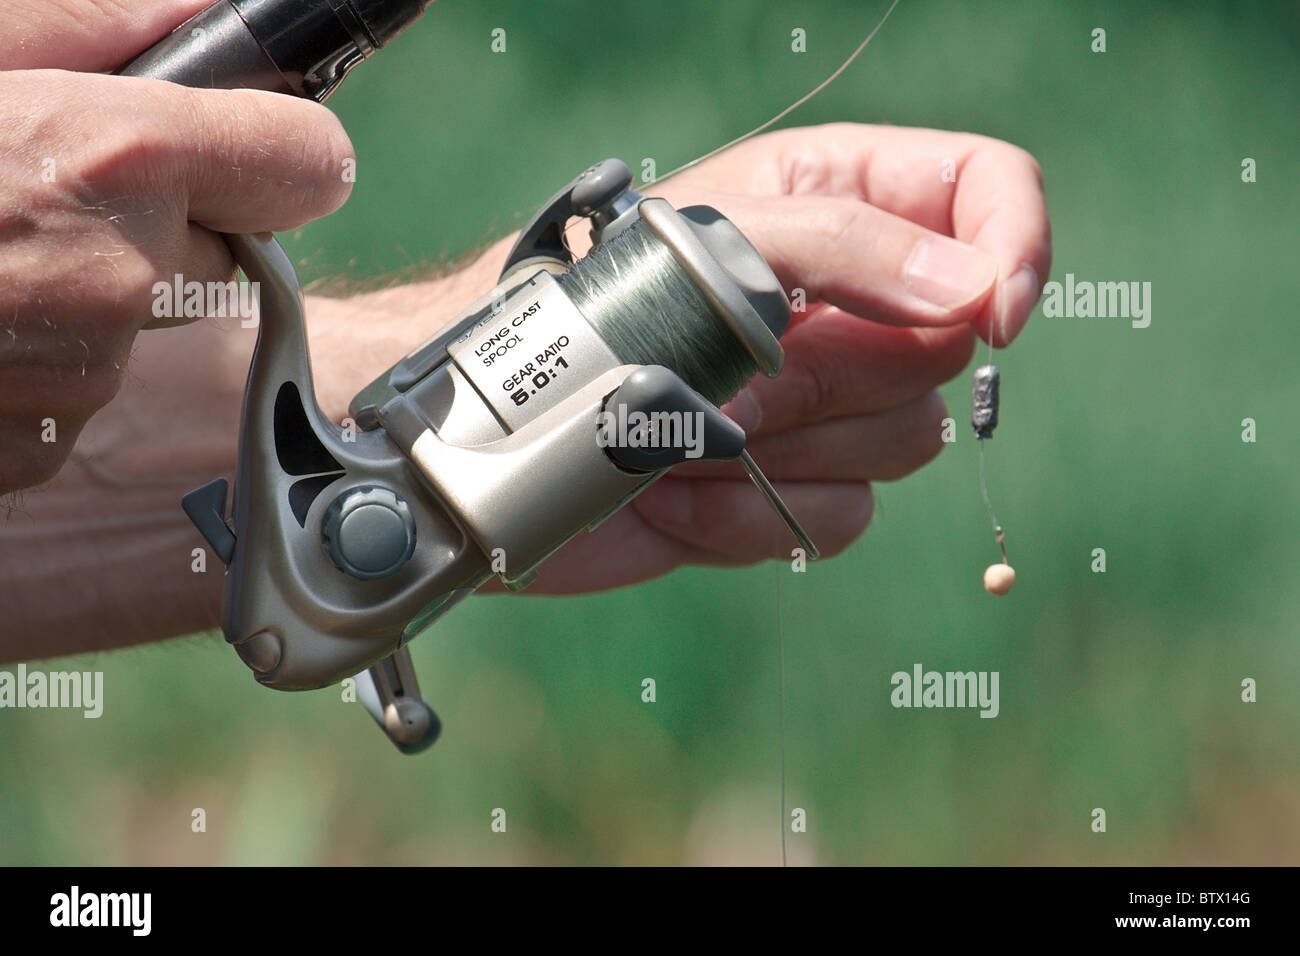 https://c8.alamy.com/comp/BTX14G/closeup-of-a-fisherman-hand-holding-a-fishing-rod-BTX14G.jpg